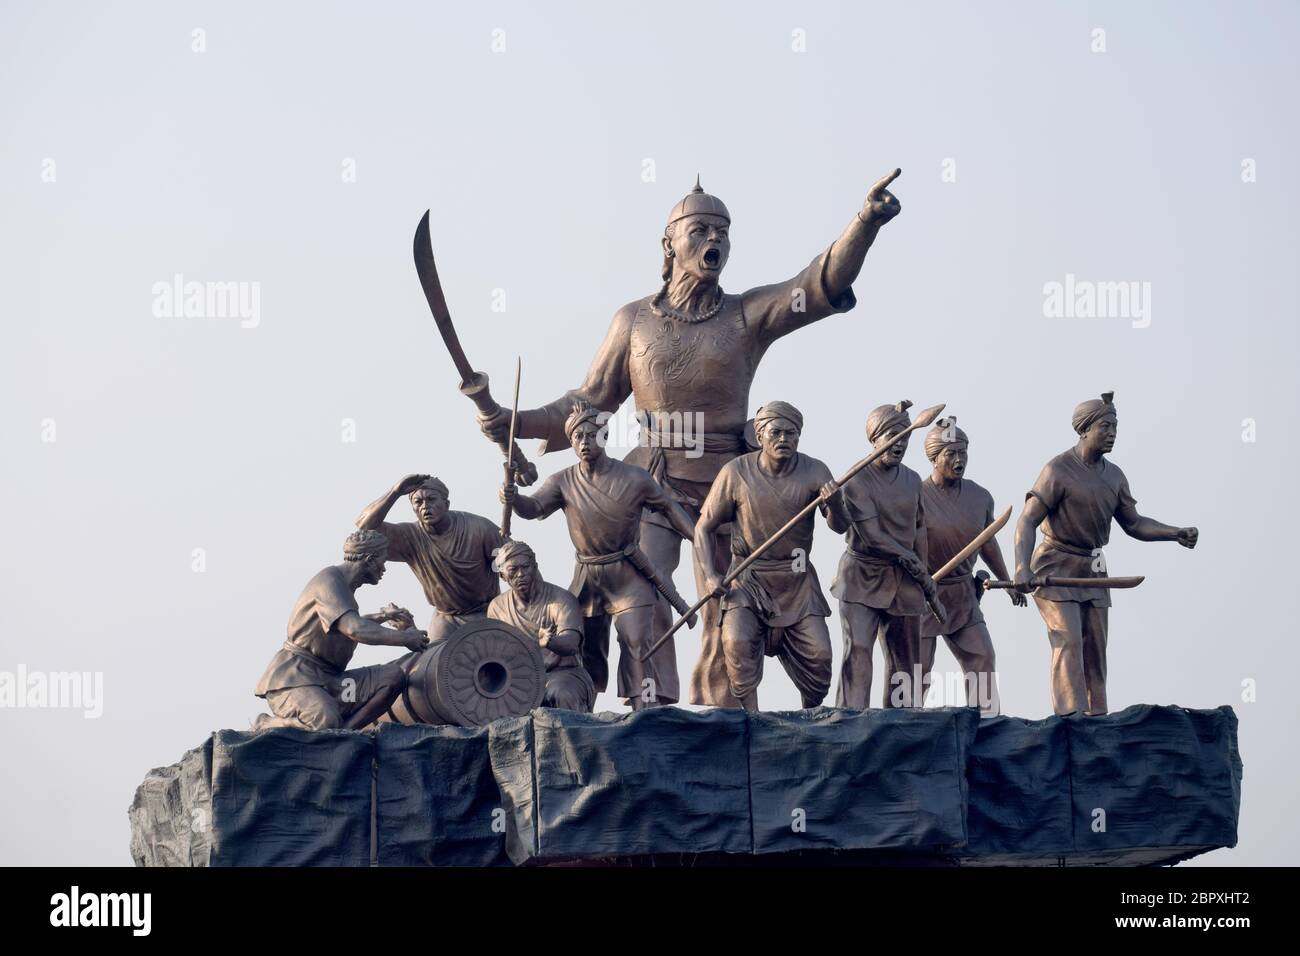 Statue Of Ahom Warriors, Lachit Borphukan, Guwahati, Assam, India Stock Photo